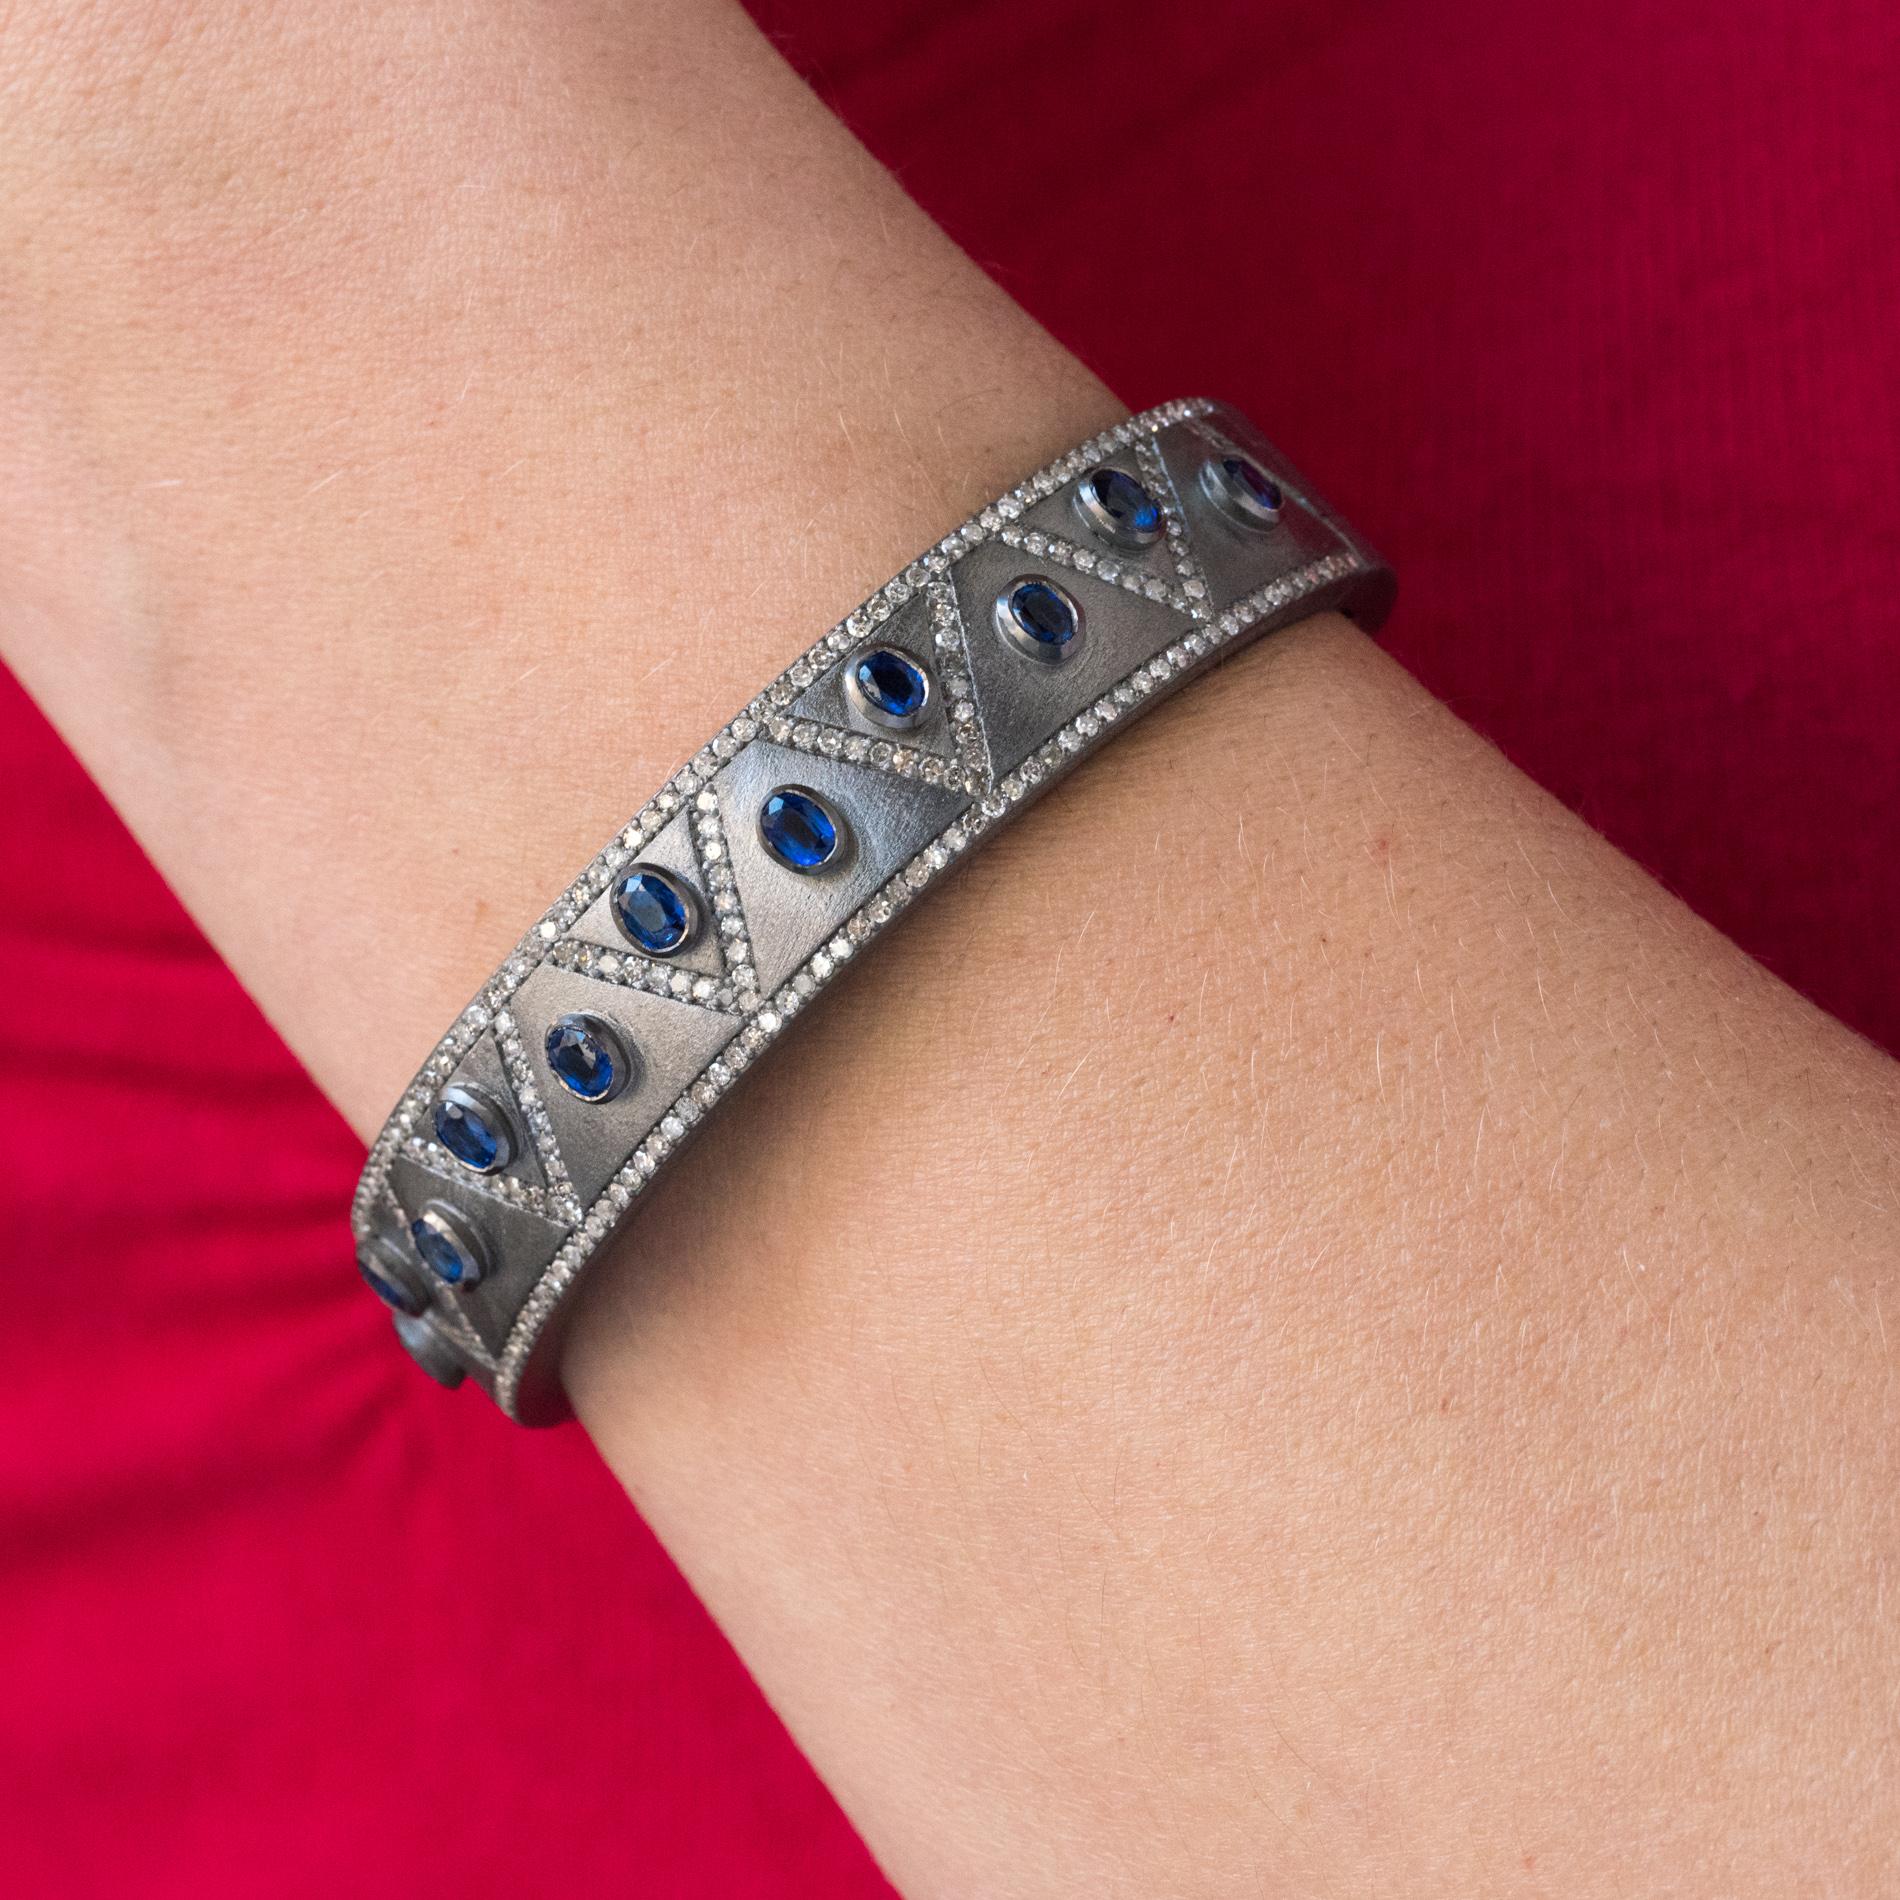 Bracelet en argent, grisé et matifié.
Rigide, ce bracelet en argent est orné sur son dessus de motifs à chevrons sertis de diamants y compris sur les bords. 11 cyanites ovales bleues en serti clos séparent ces motifs. L'intérieur est perforé de